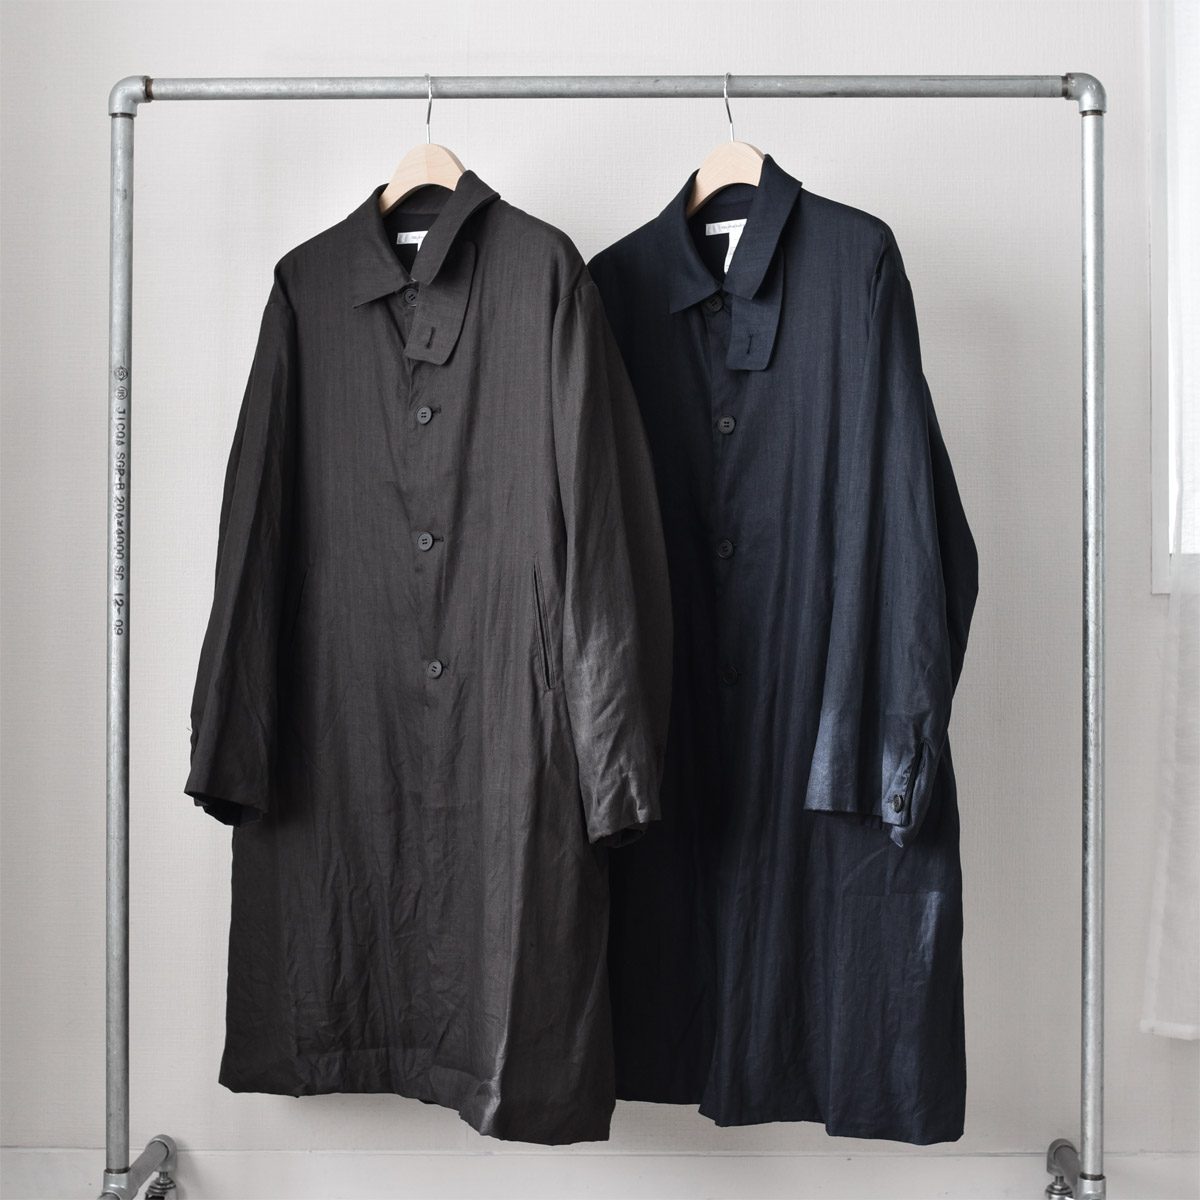 EEL Products（イールプロダクツ）Yozakura Coat（ヨザクラコート